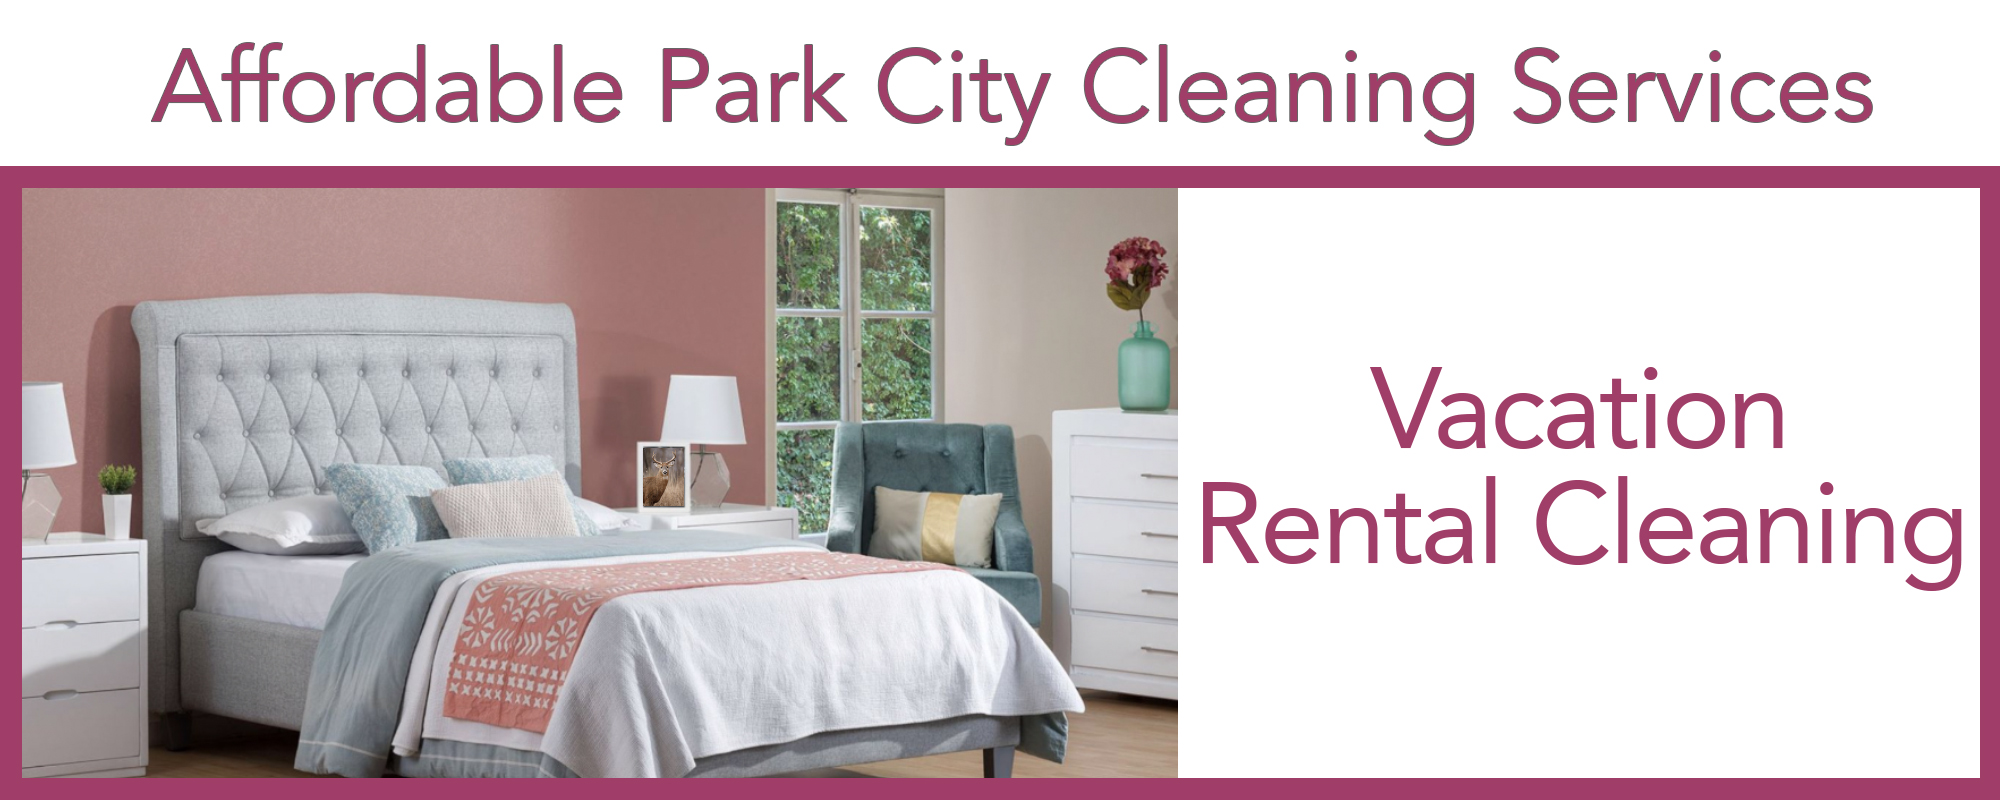 Utah_cleaning_vacation_rental_Airbnb